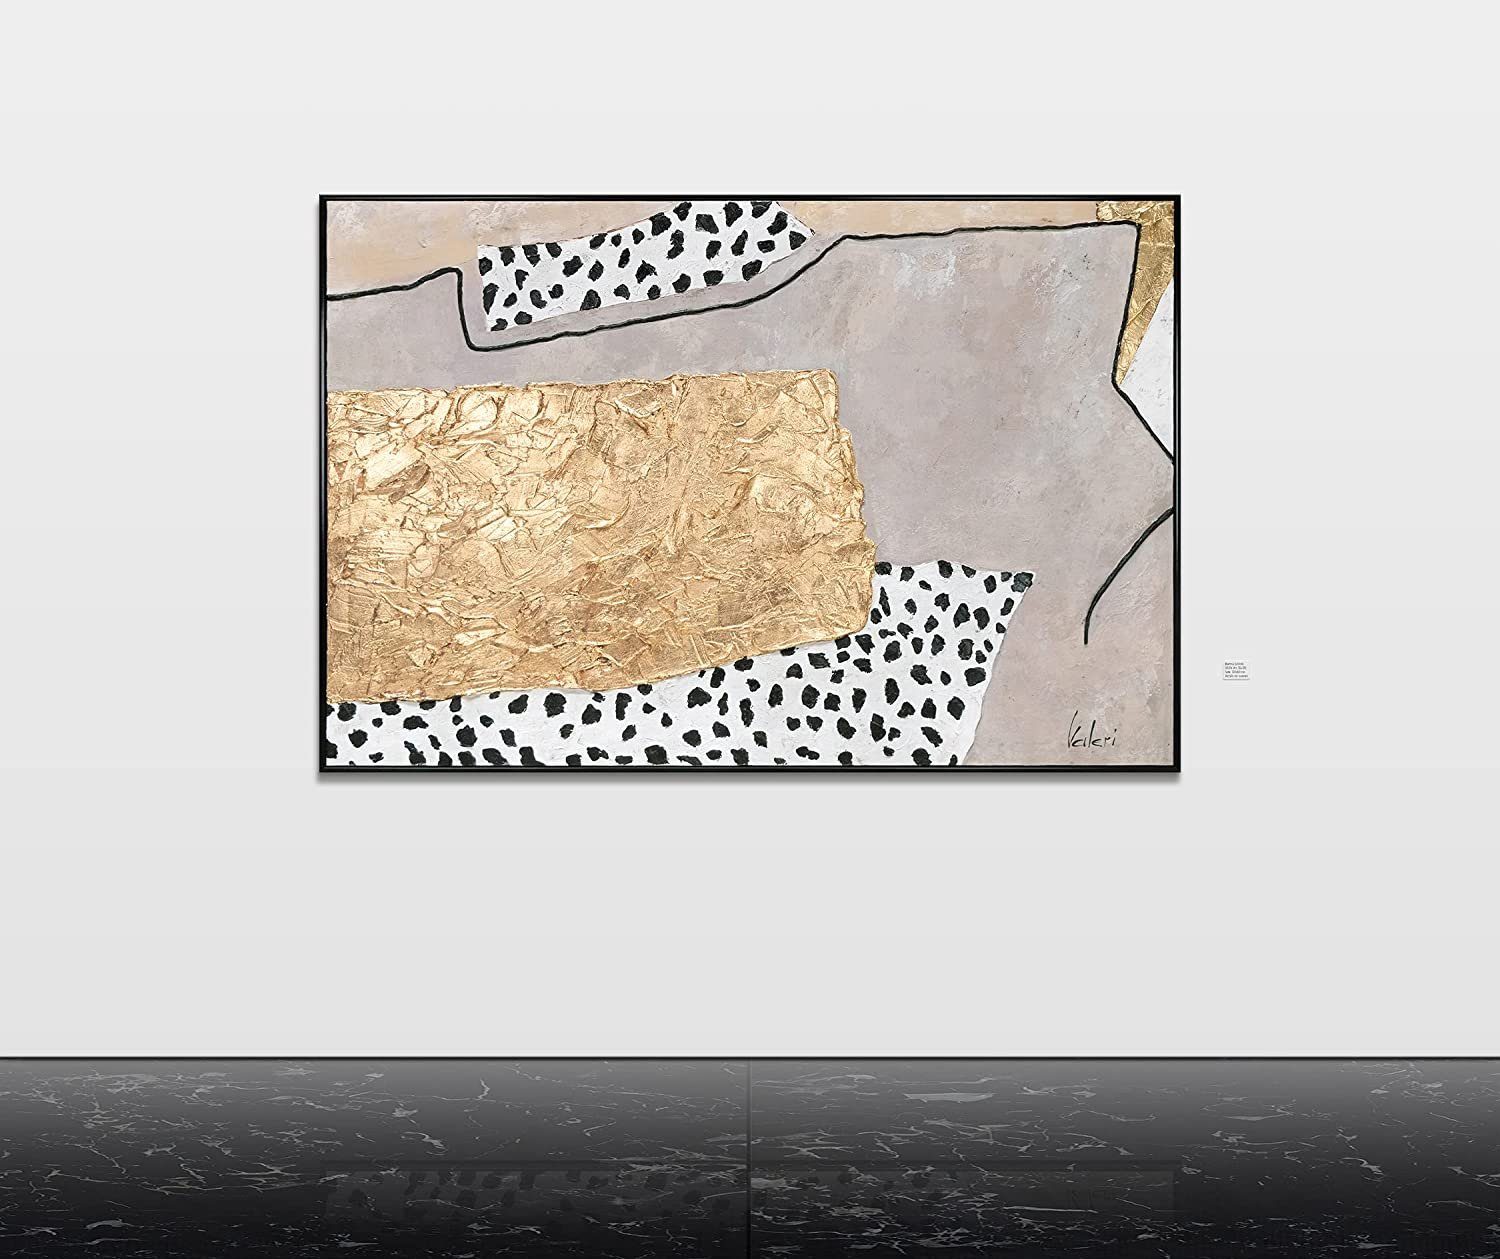 Dalmatiner mit Tiermuster Dalmatiner, Bild Leinwand mit YS-Art Gemälde Handgemalt 101 Rahmen